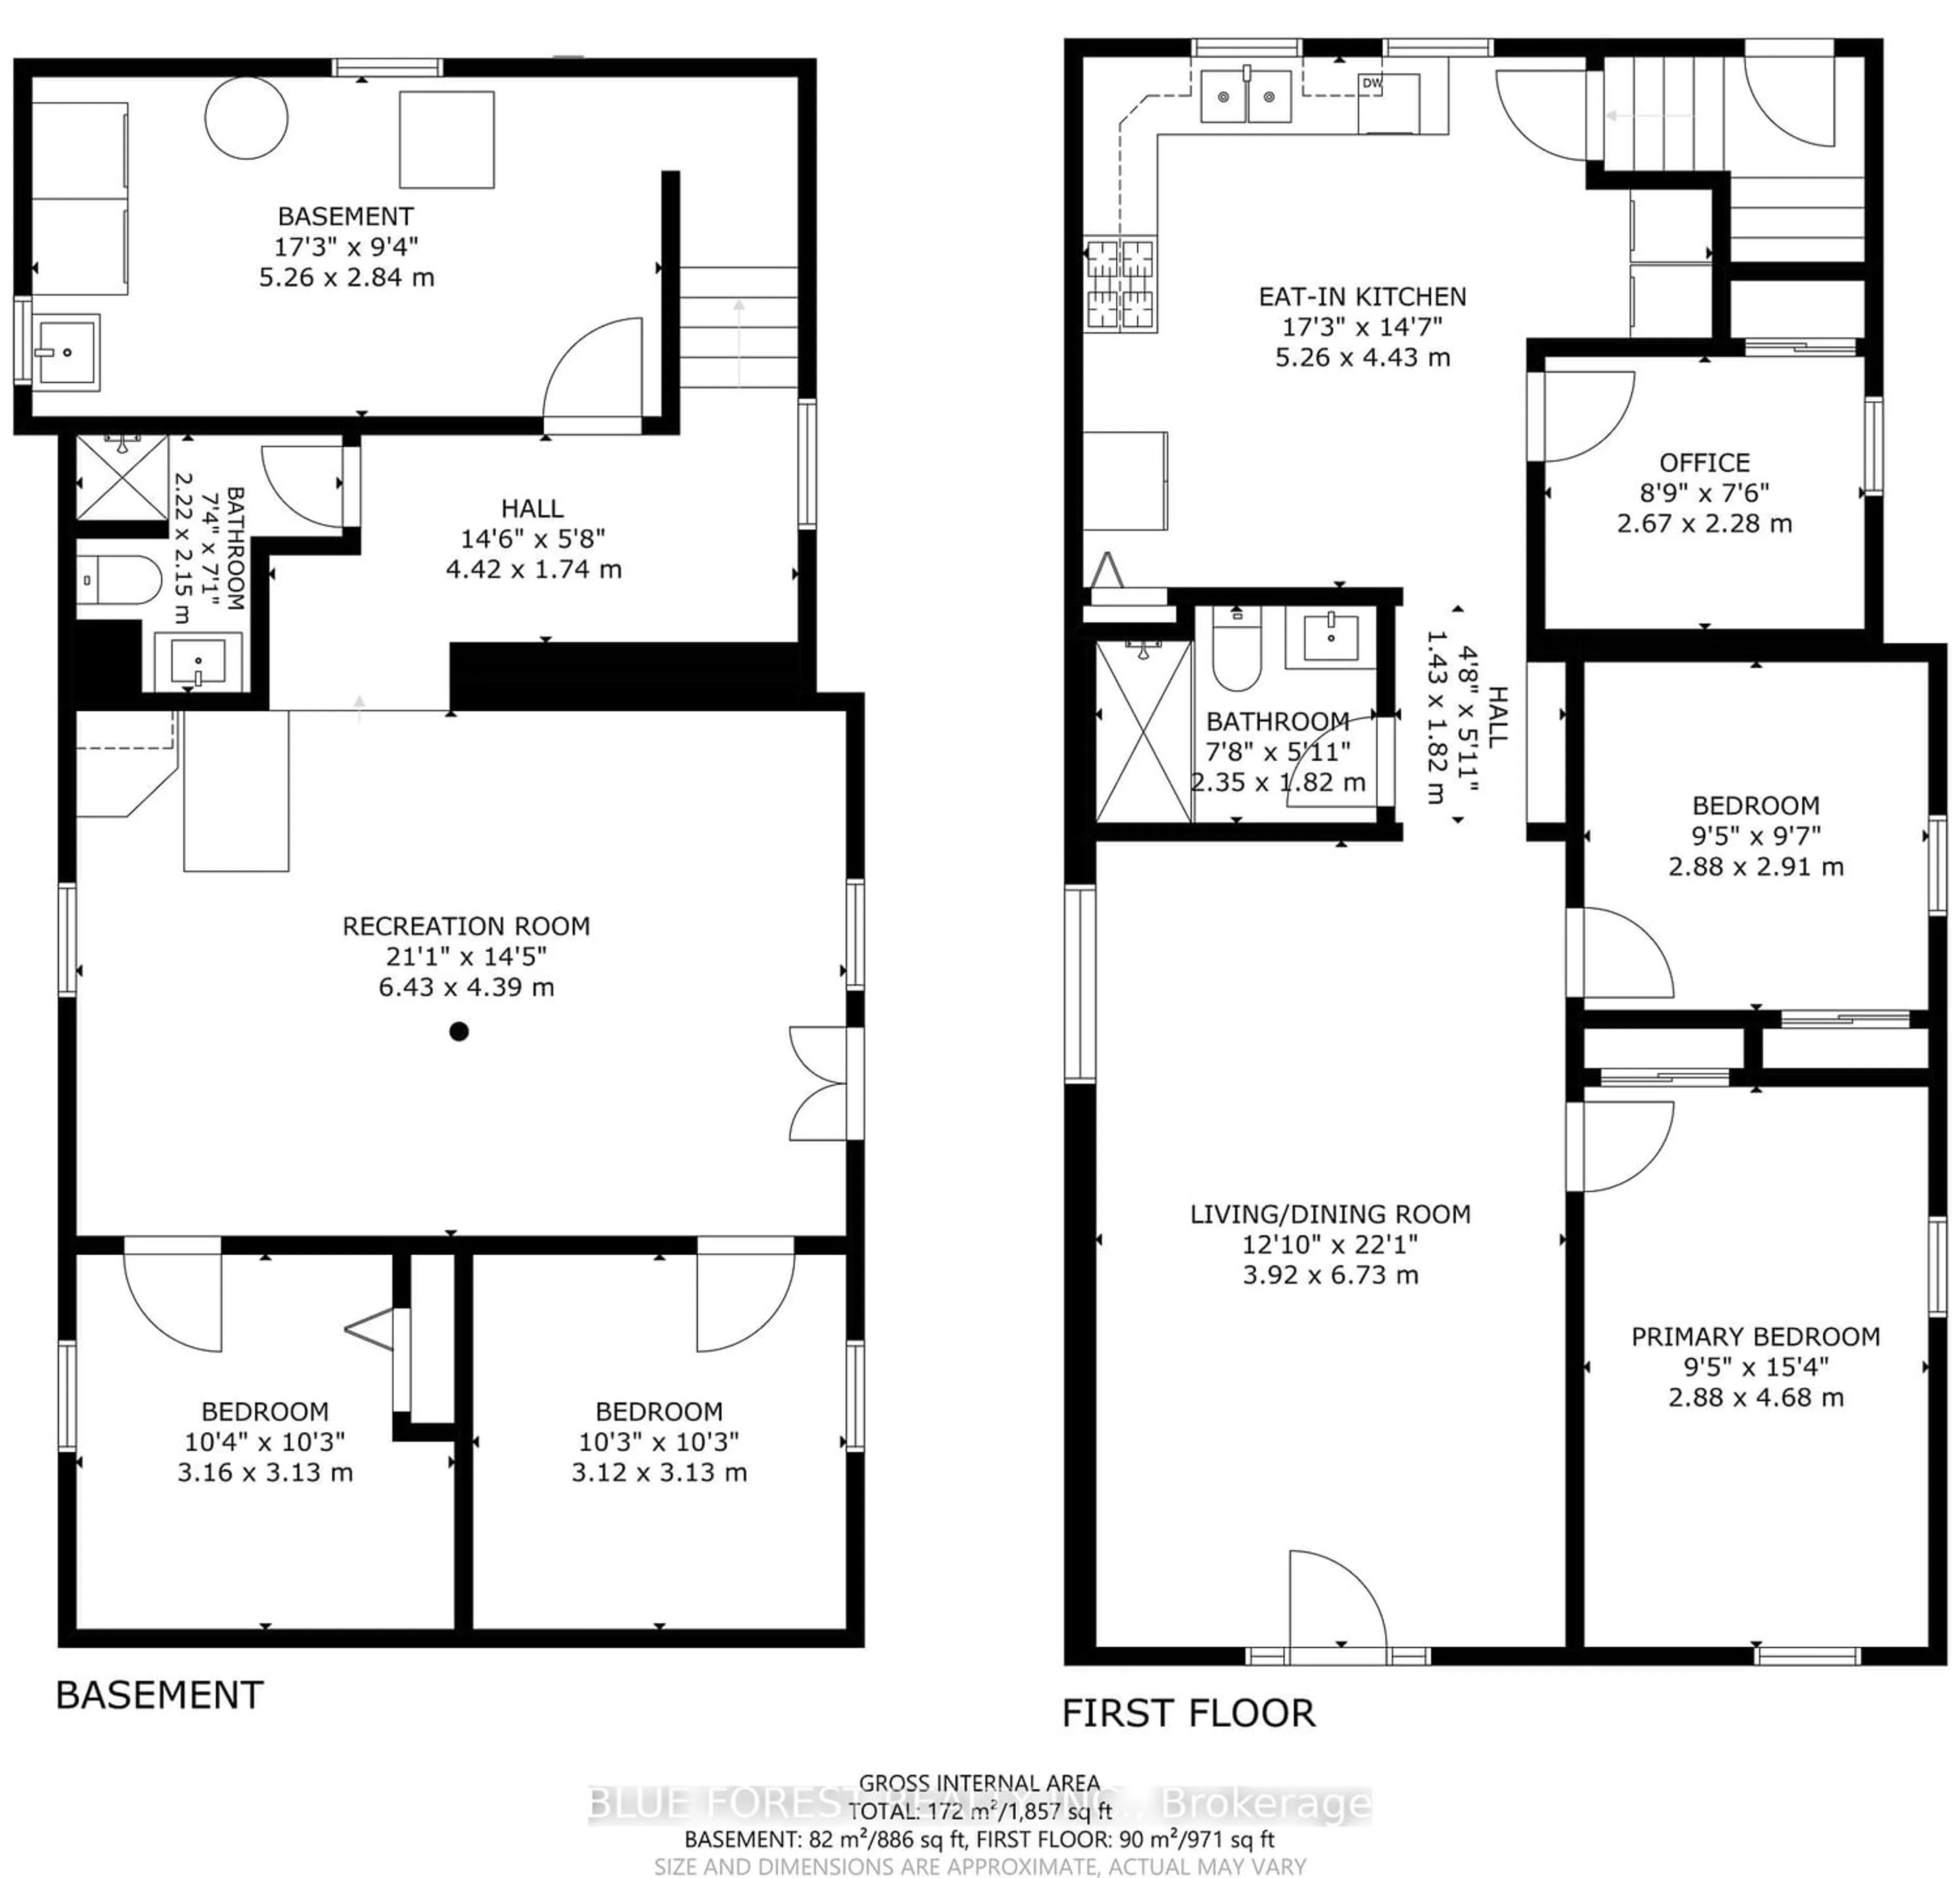 Floor plan for 58 Mackay Ave, London Ontario N6J 2V3